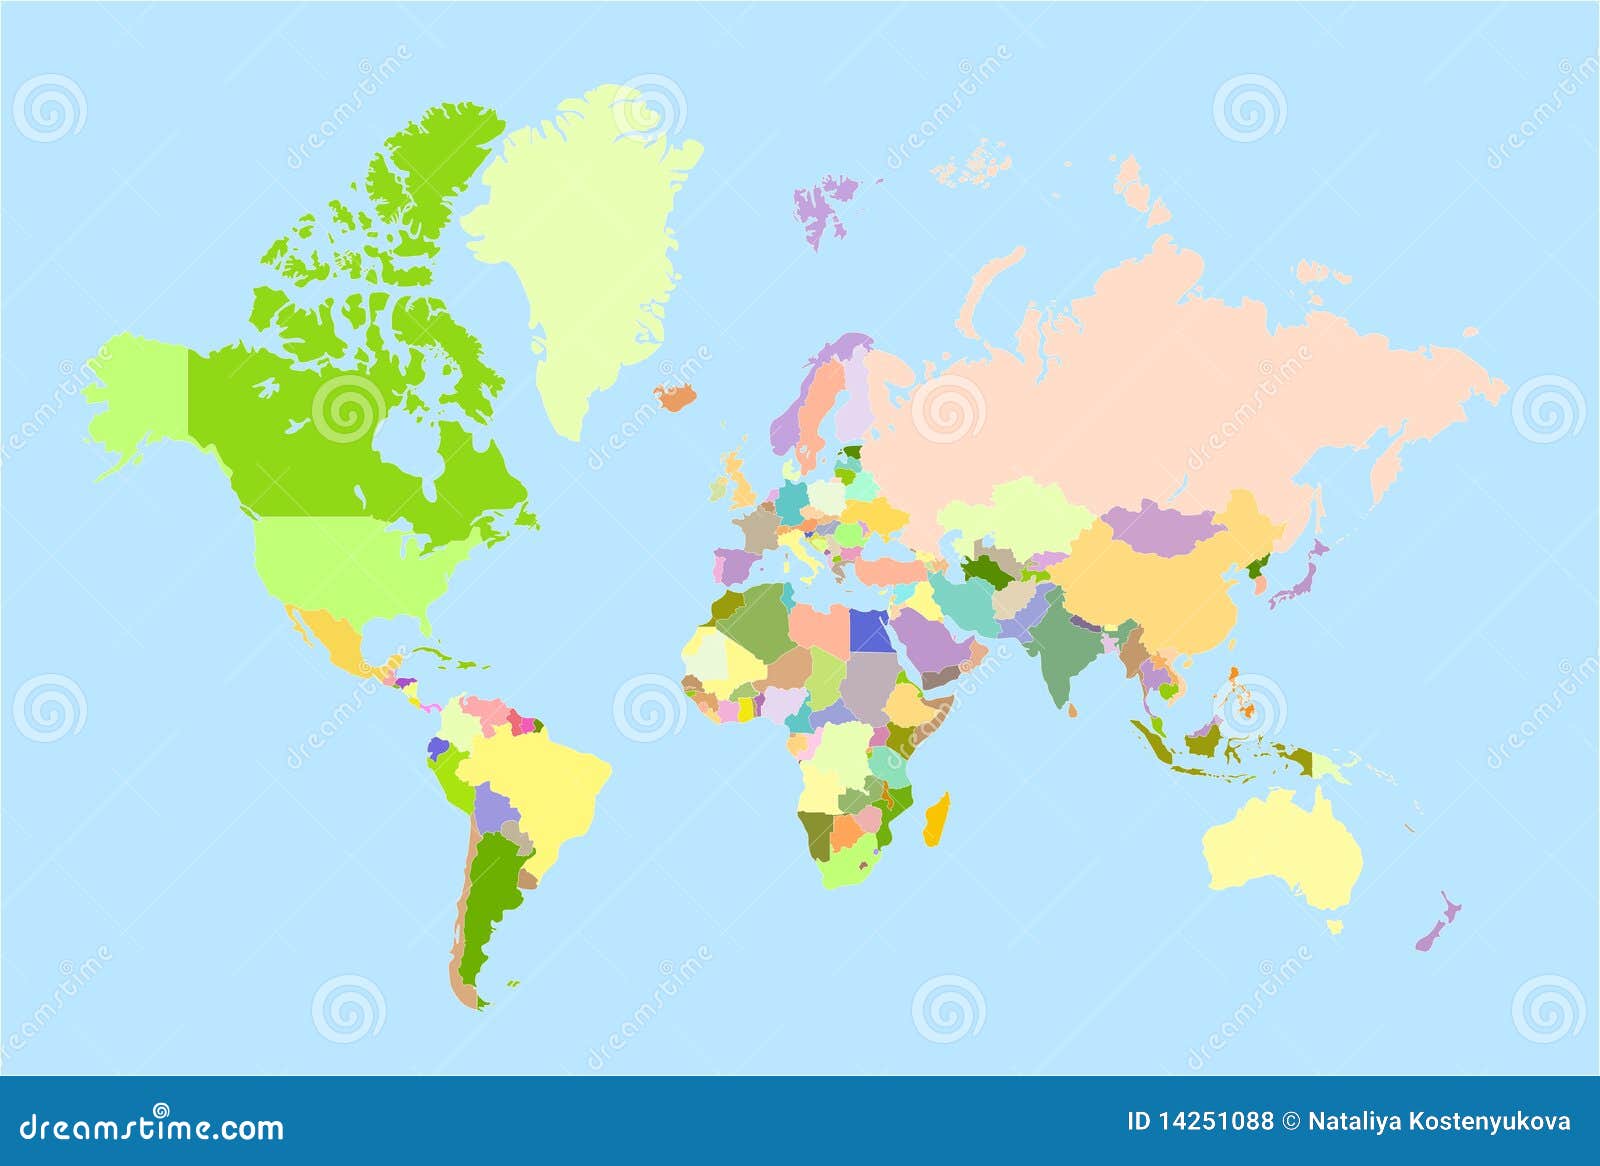 Vektorweltkarte. Globale Weltkarte, jedes Land ist die einzelne getrennte Nachricht.